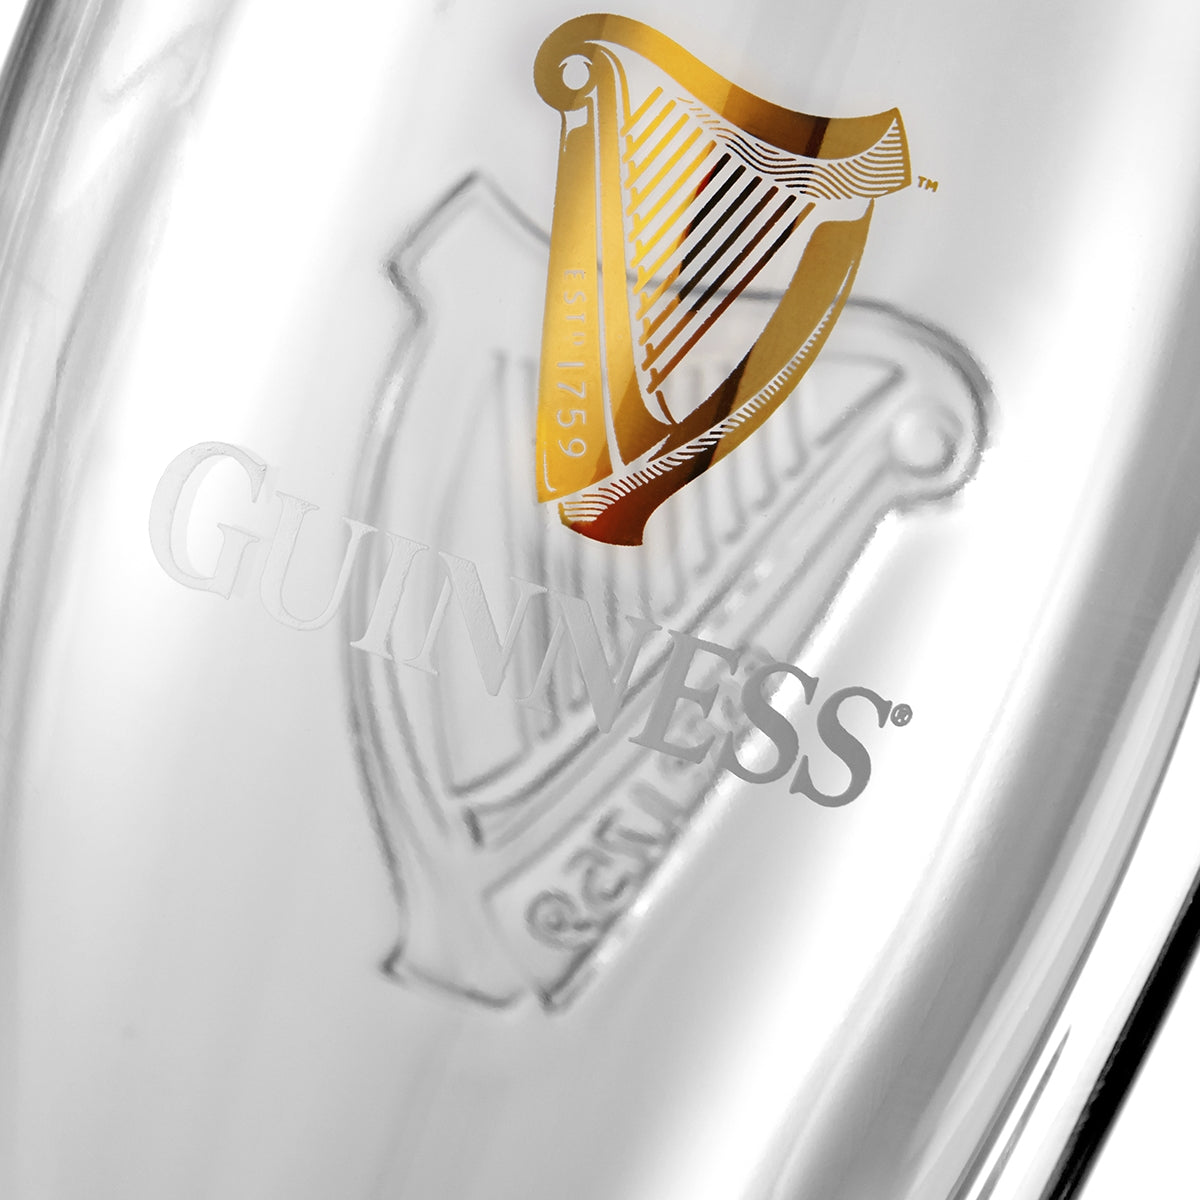 Guinness Pint Glass - 2 Pack